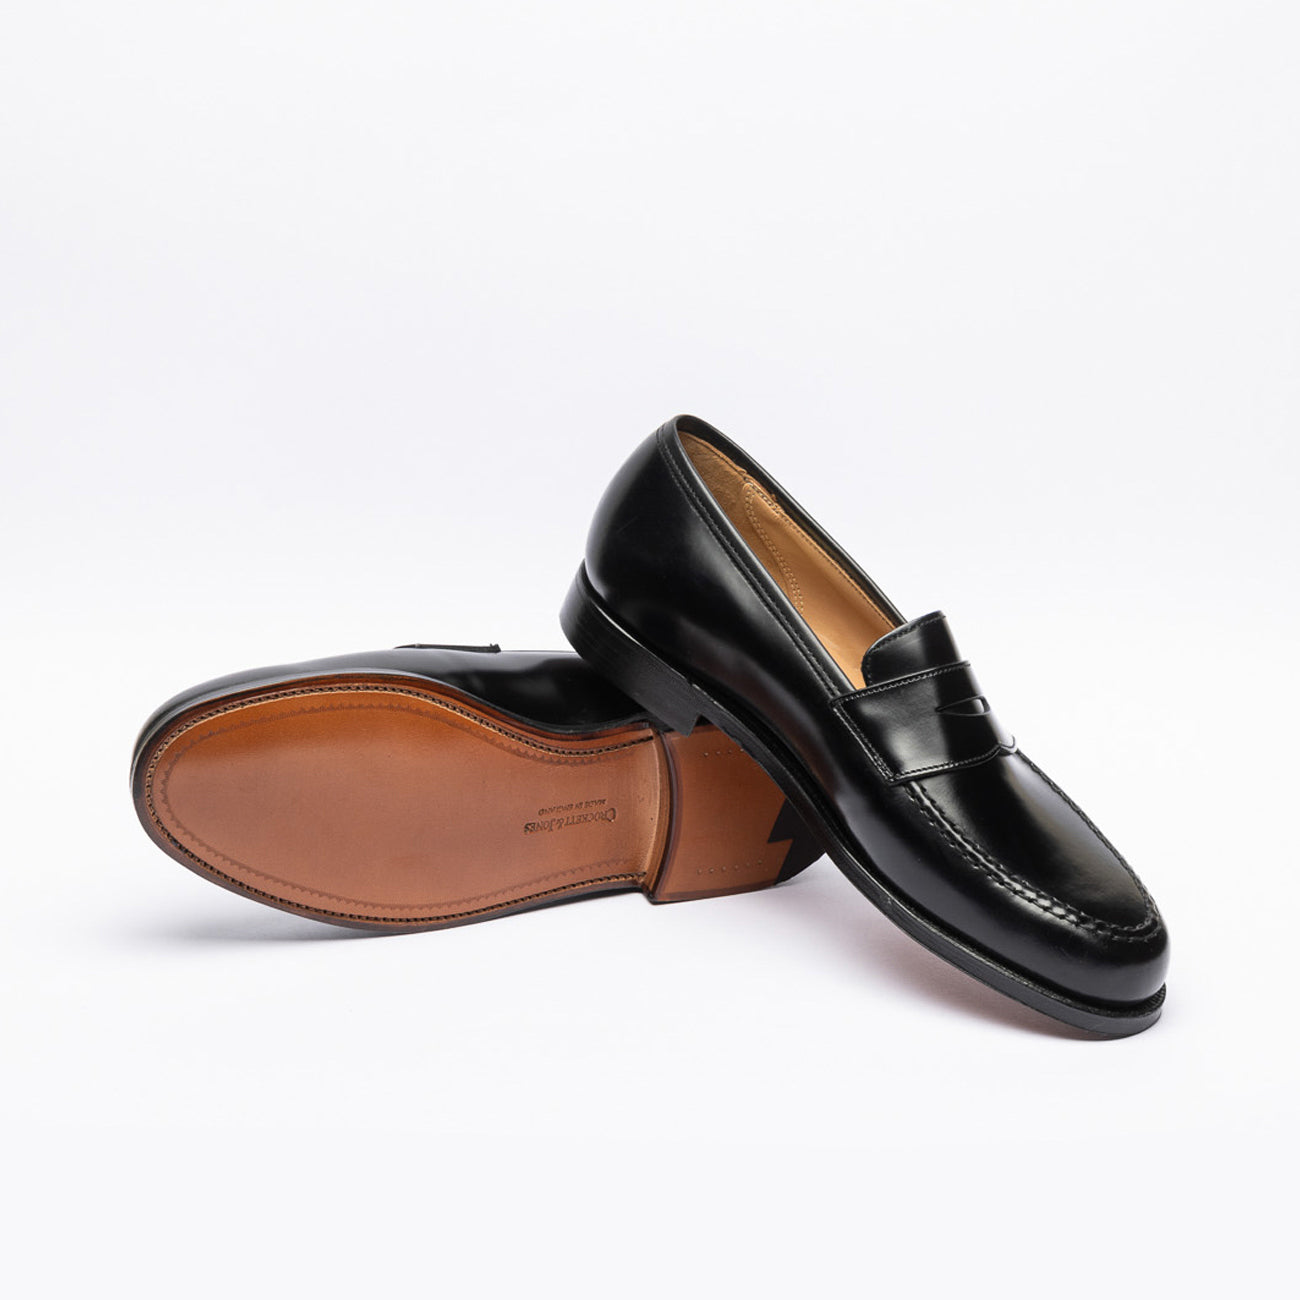 Crockett & Jones Boston penny loafer moccasin in black leather